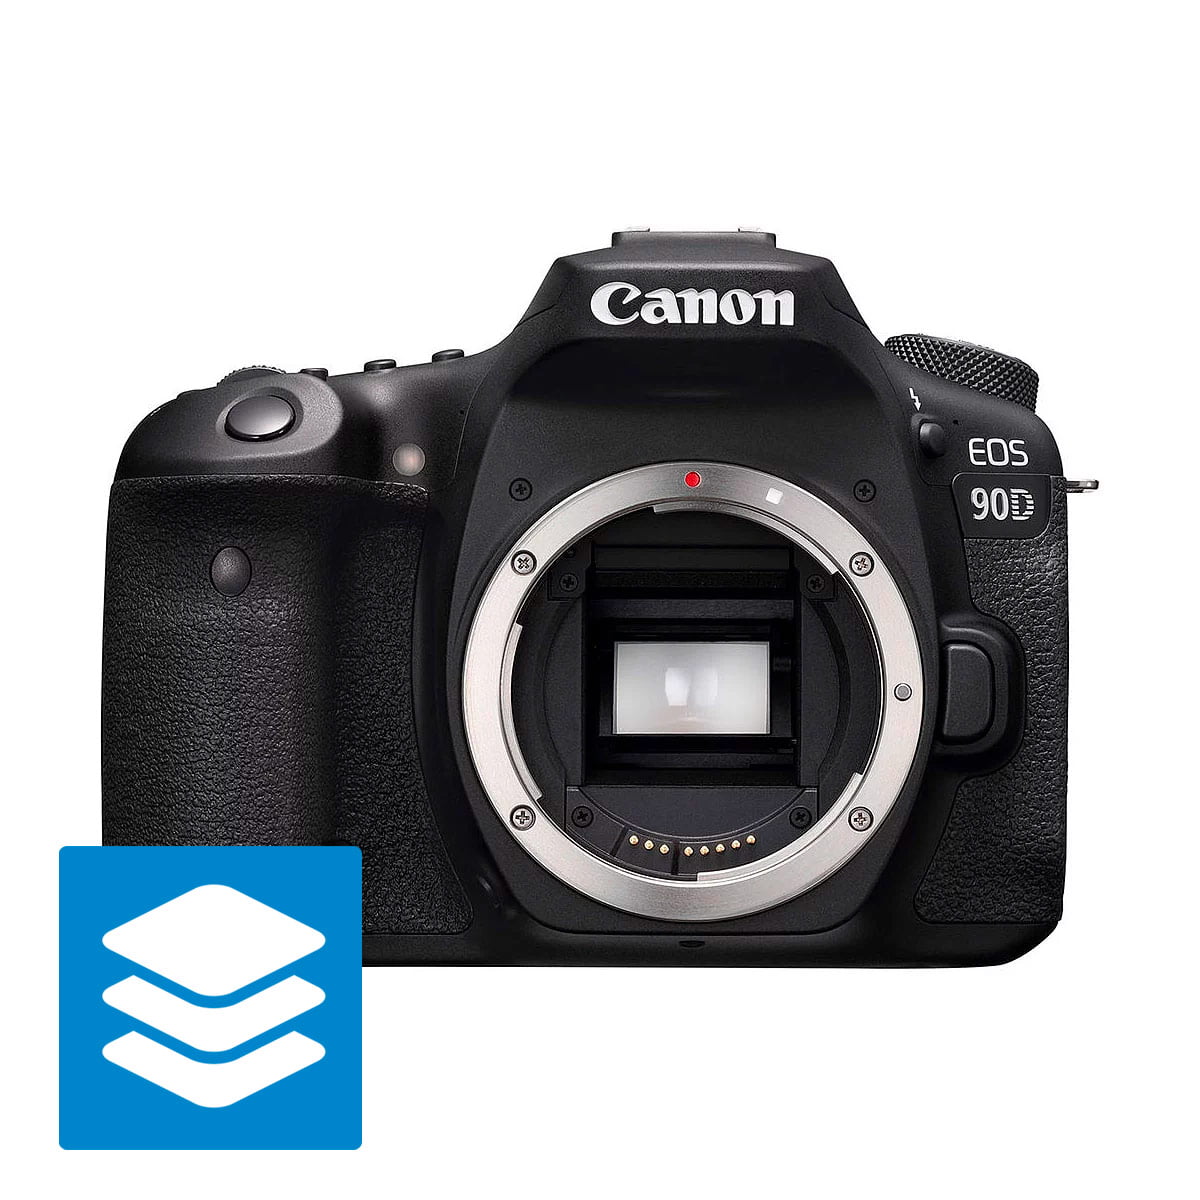 Canon EOS 90D tuotepaketti Canon järjestelmäkamerat 16